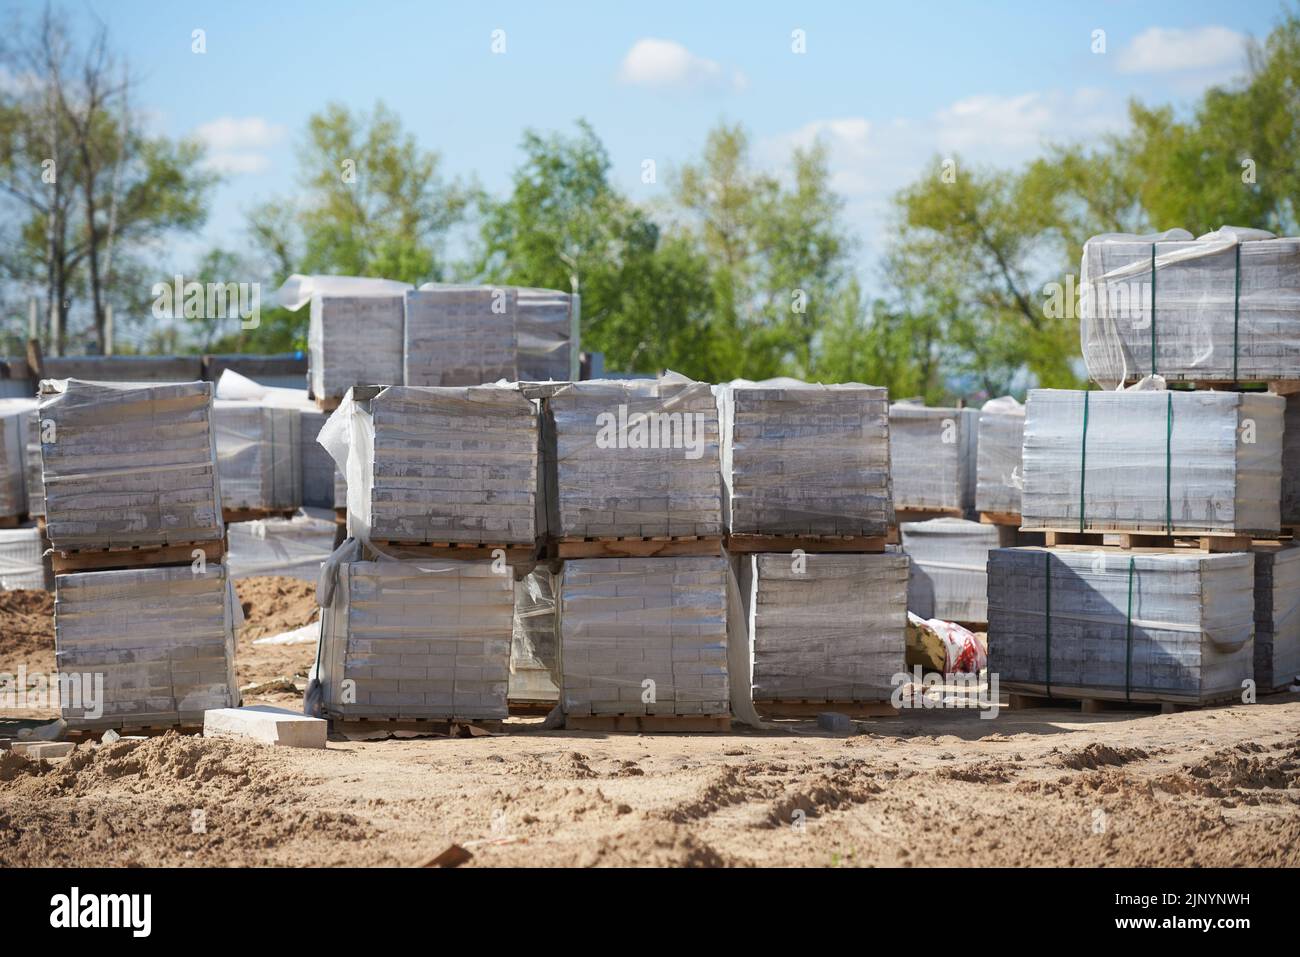 Pavimento de baldosas embaladas en el sitio de construcción. Foto de stock